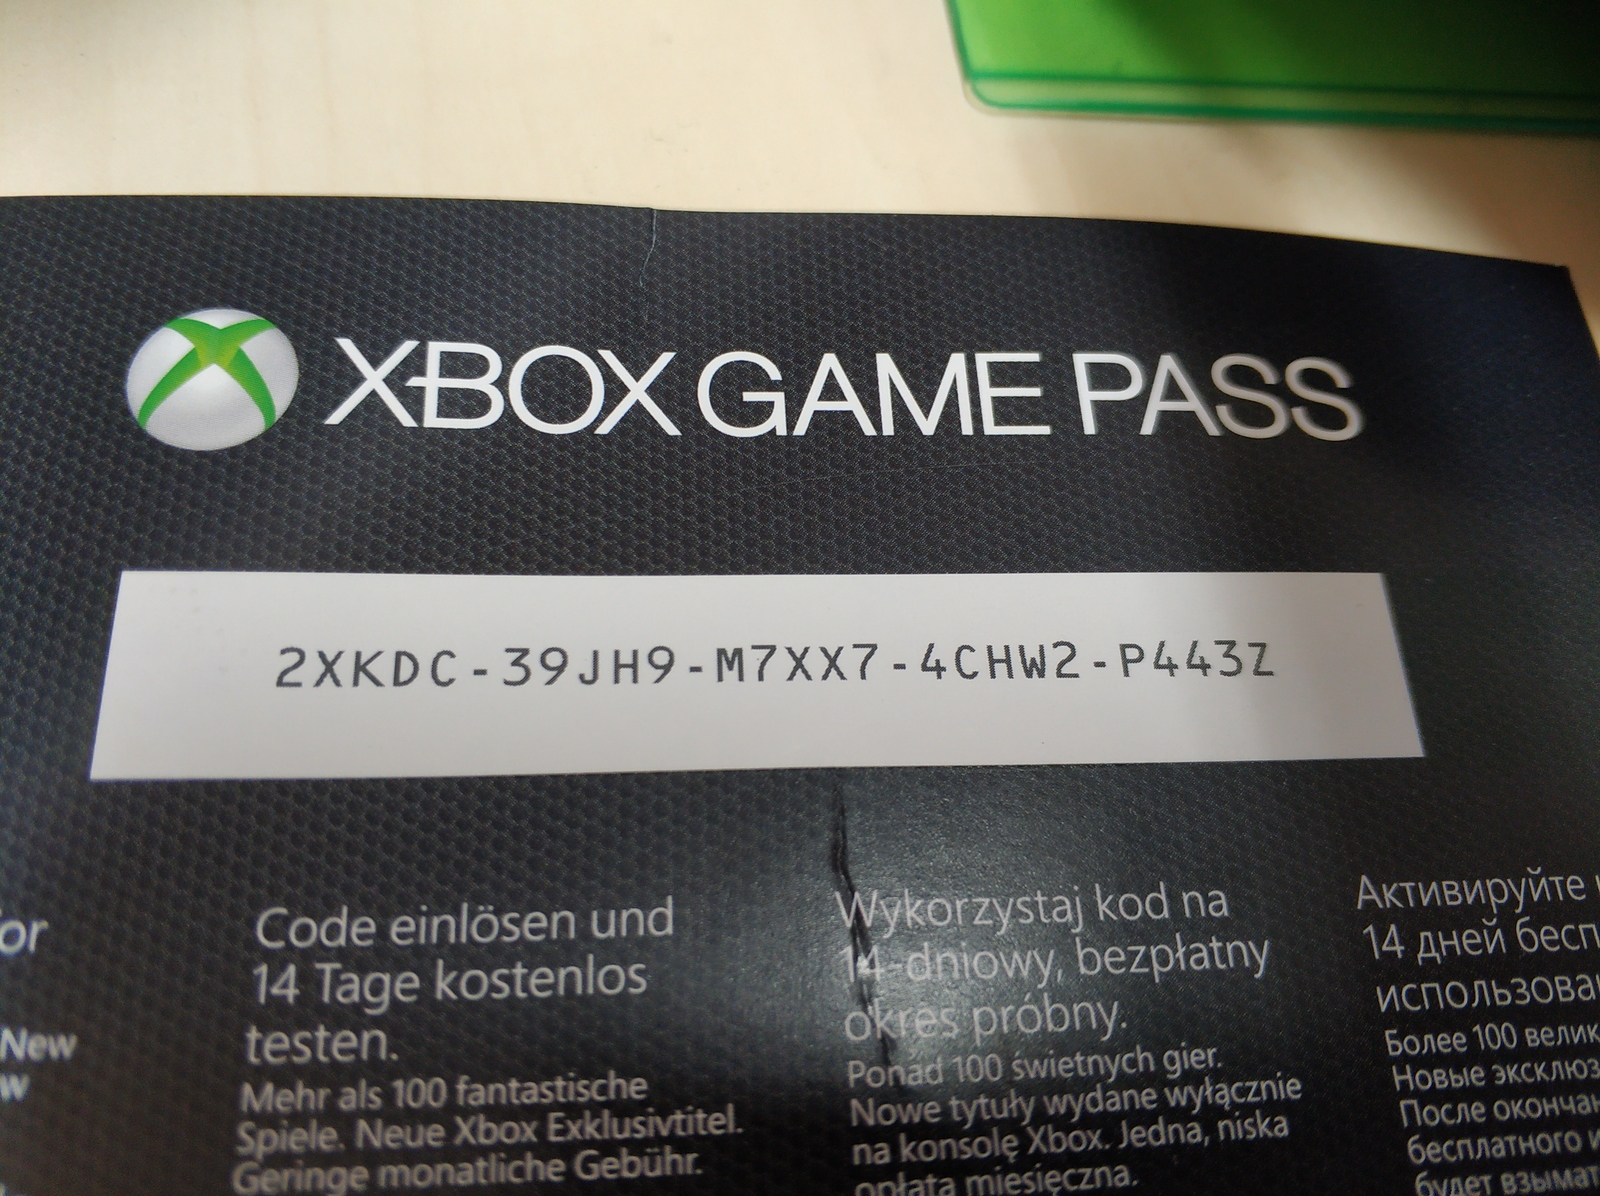 Код на game pass. Xbox Live Gold Xbox 360 промокод. Код гейм пасс Xbox one ультимейт. Xbox game Pass Ultimate код. Коды на Xbox one.